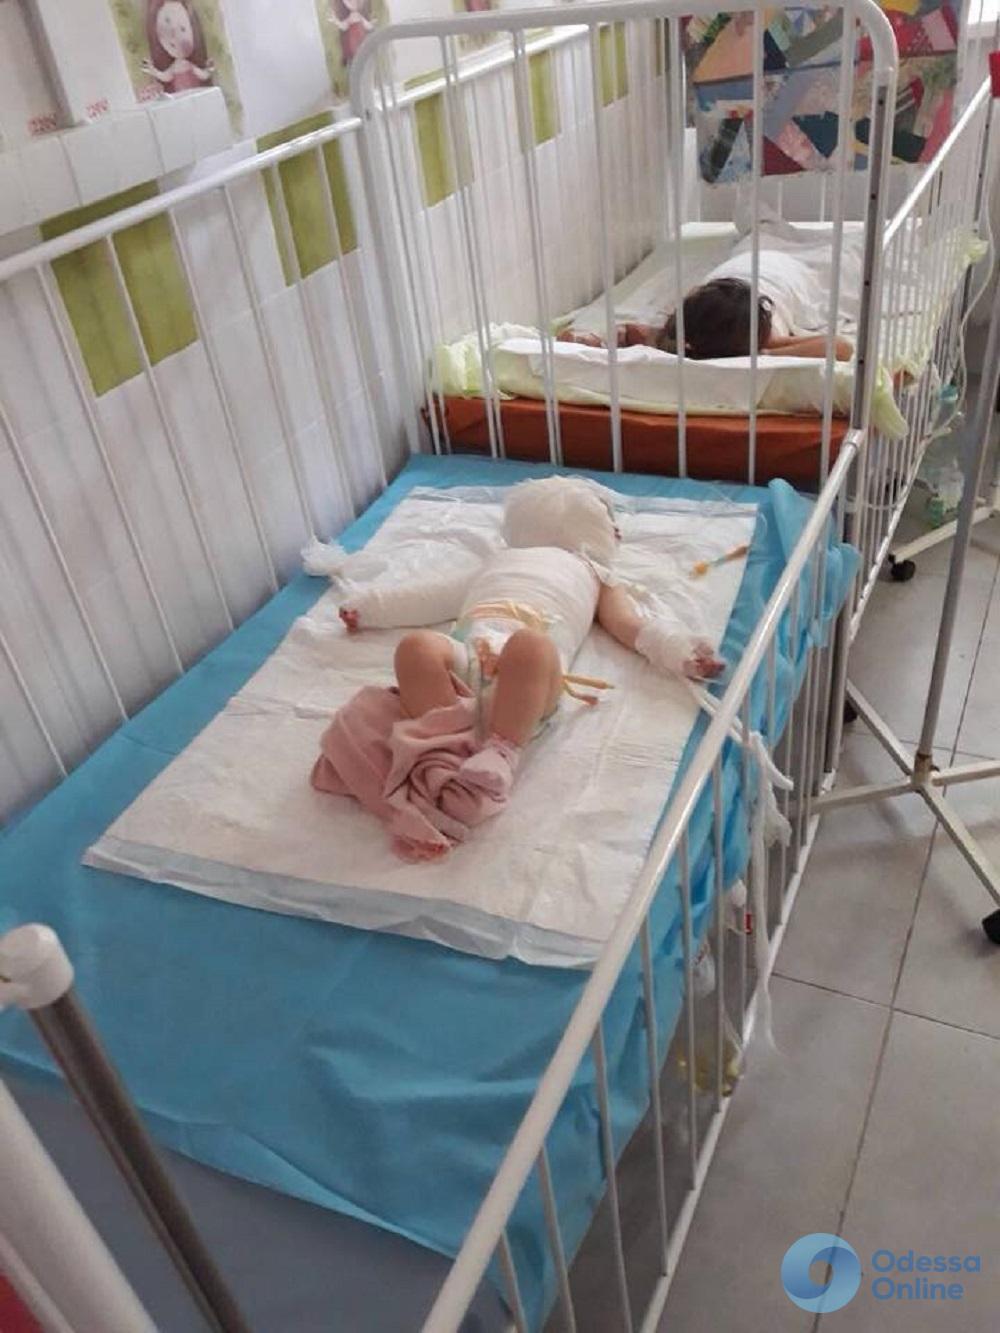 Ожоги кипятком и химическим средством: в одесской больнице спасают жизни двух маленьких девочек